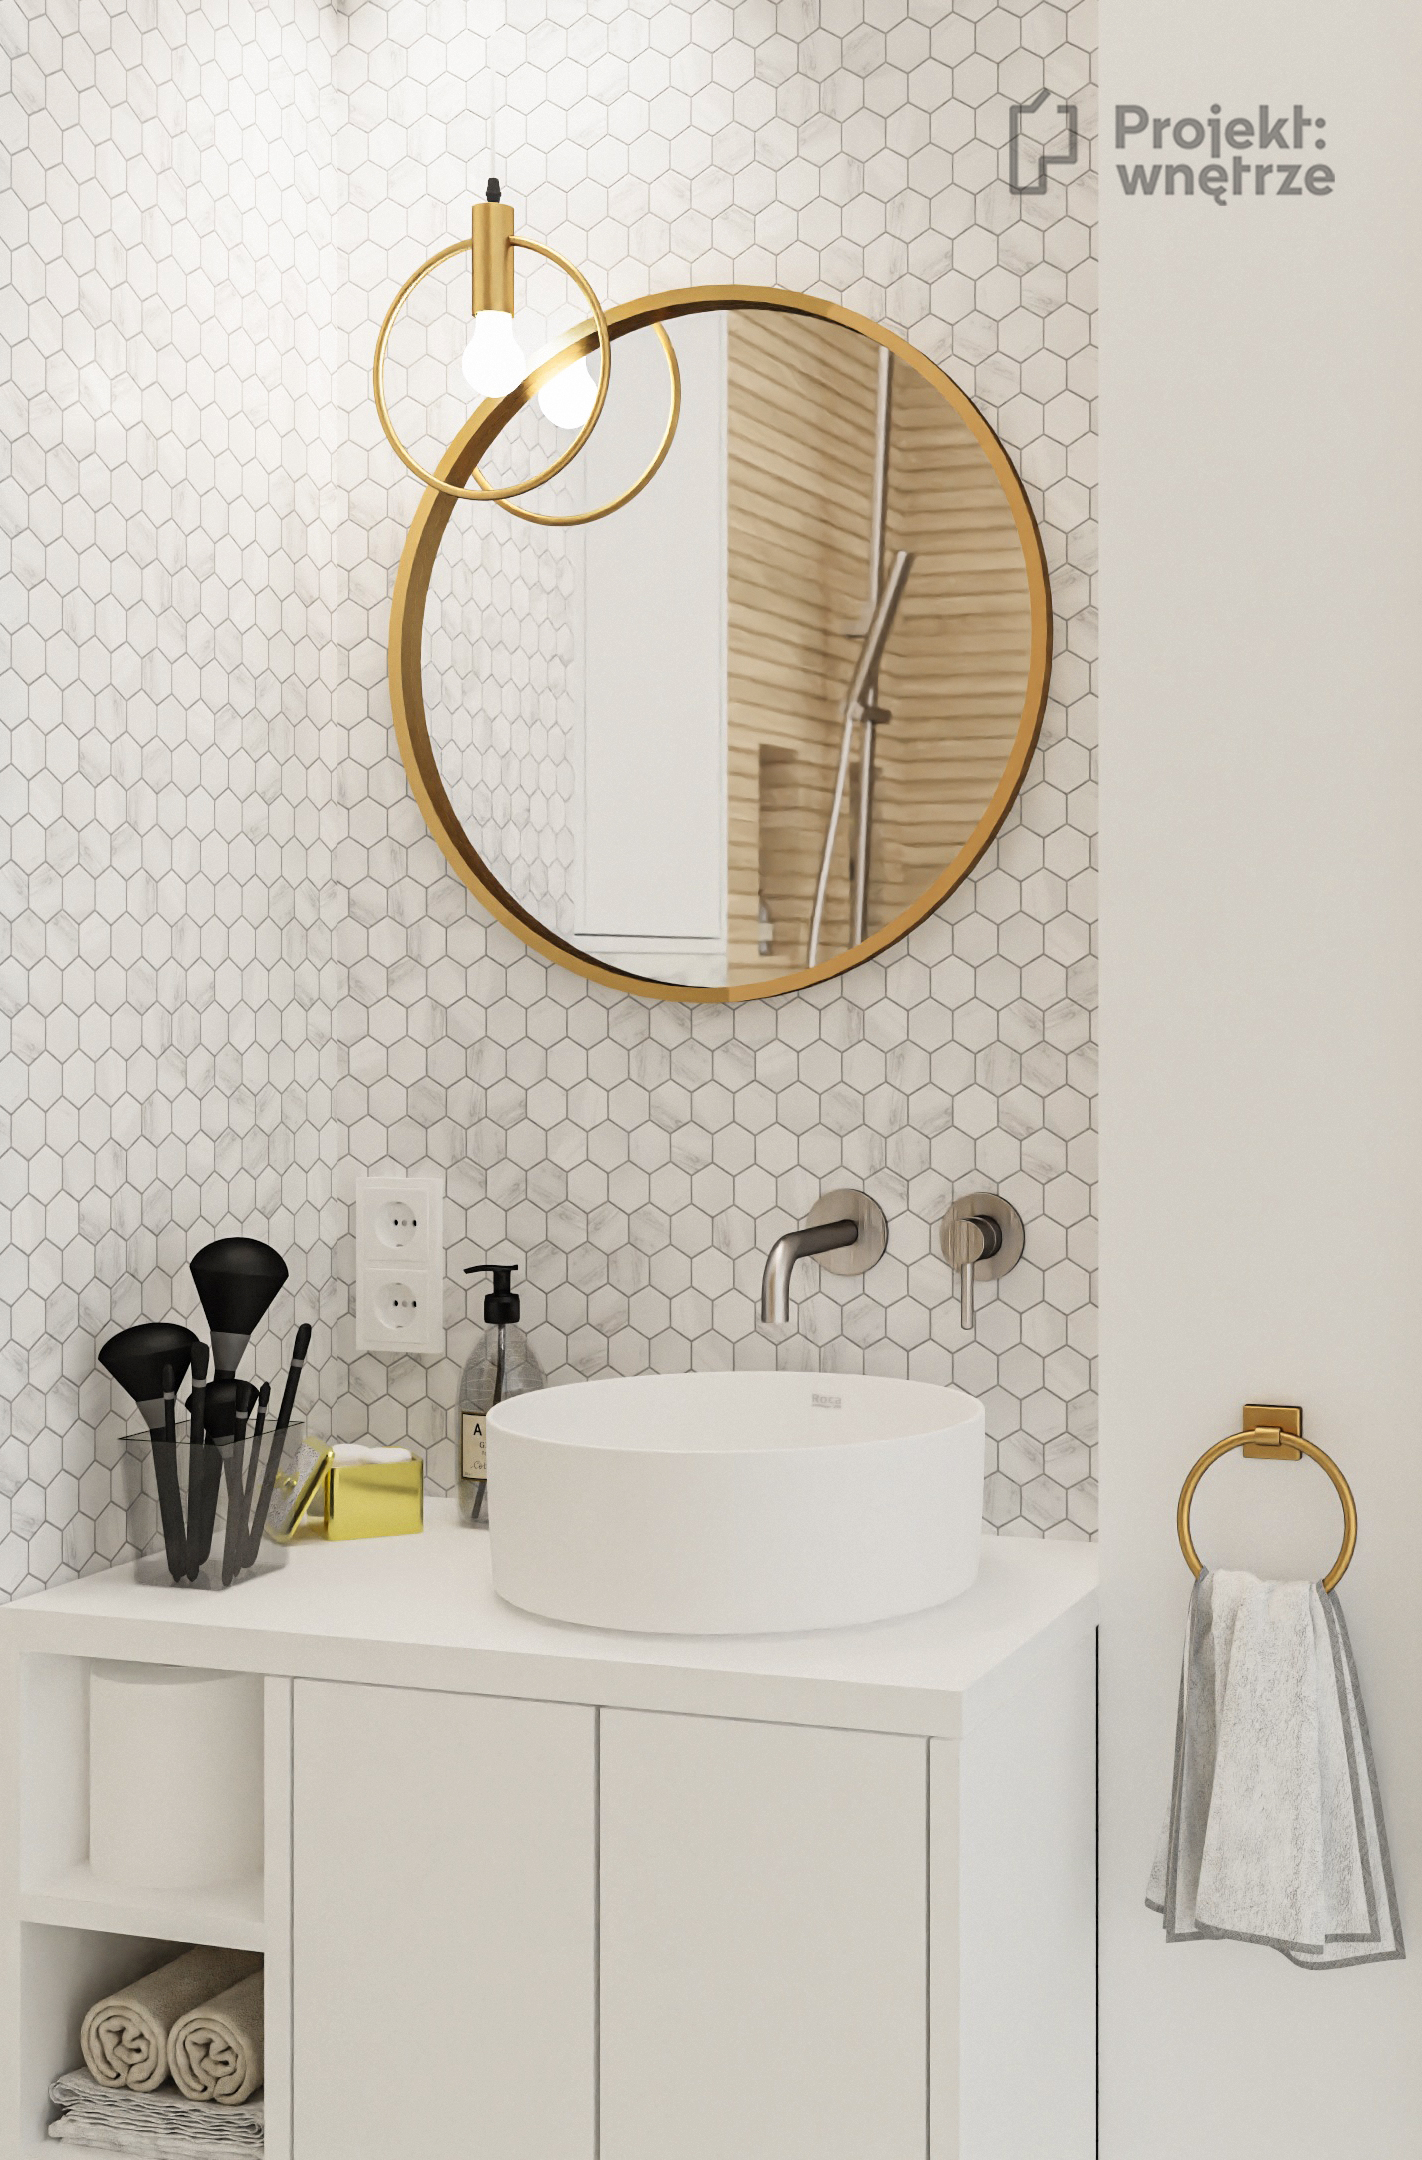 Mała elegancka łazienka marmur heksagon drewniane płytki Venis Starwood lamele okrągłe złote lustro mała umywalka - projekt łazienki PROJEKT WNĘTRZE www.projektwnetrze.com.pl